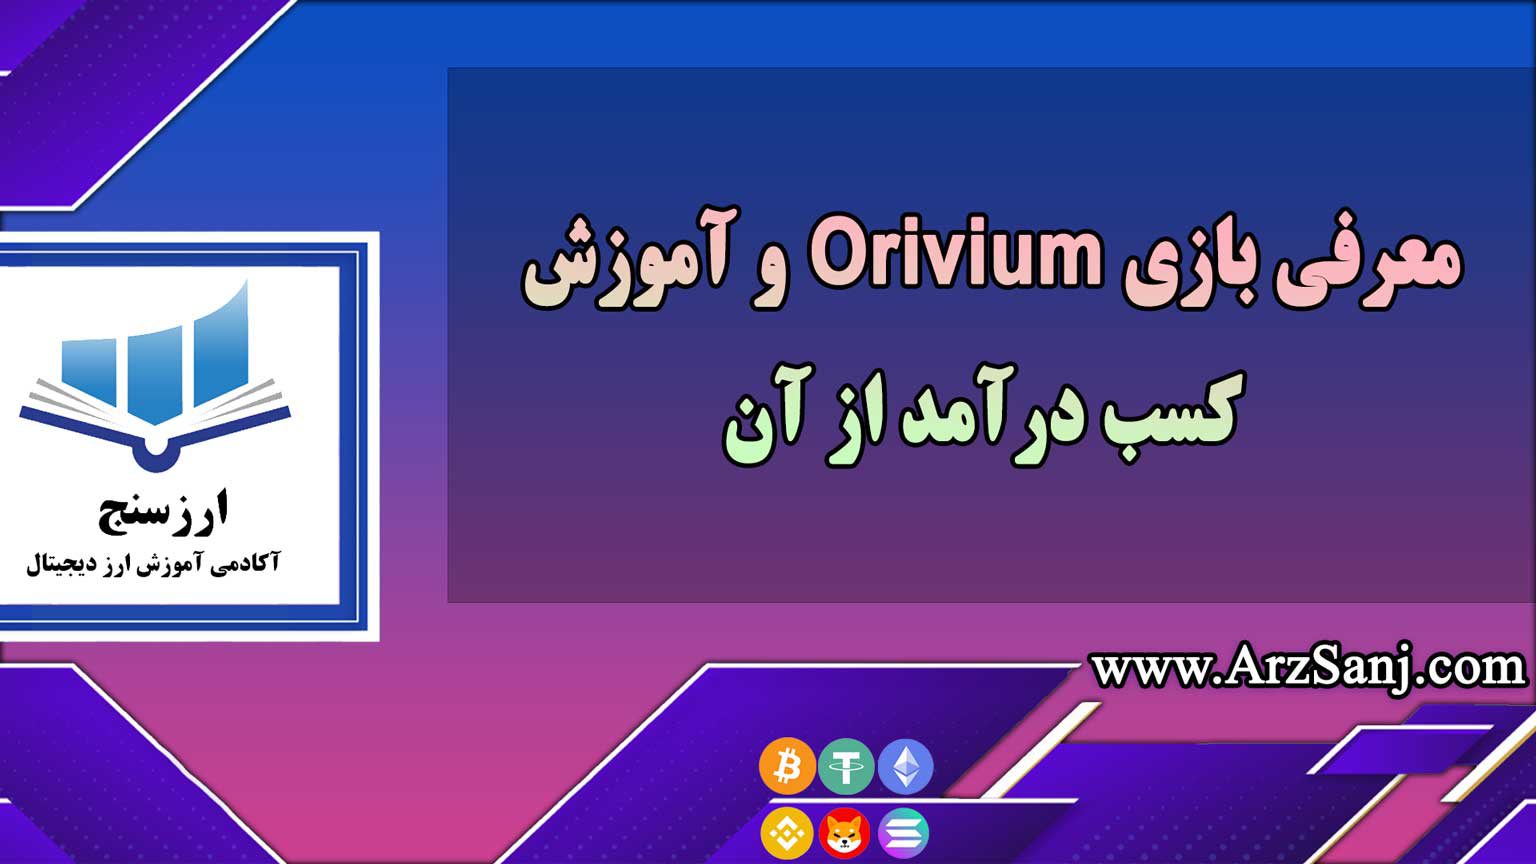 معرفی بازی Orivium و آموزش کسب درآمد از آن